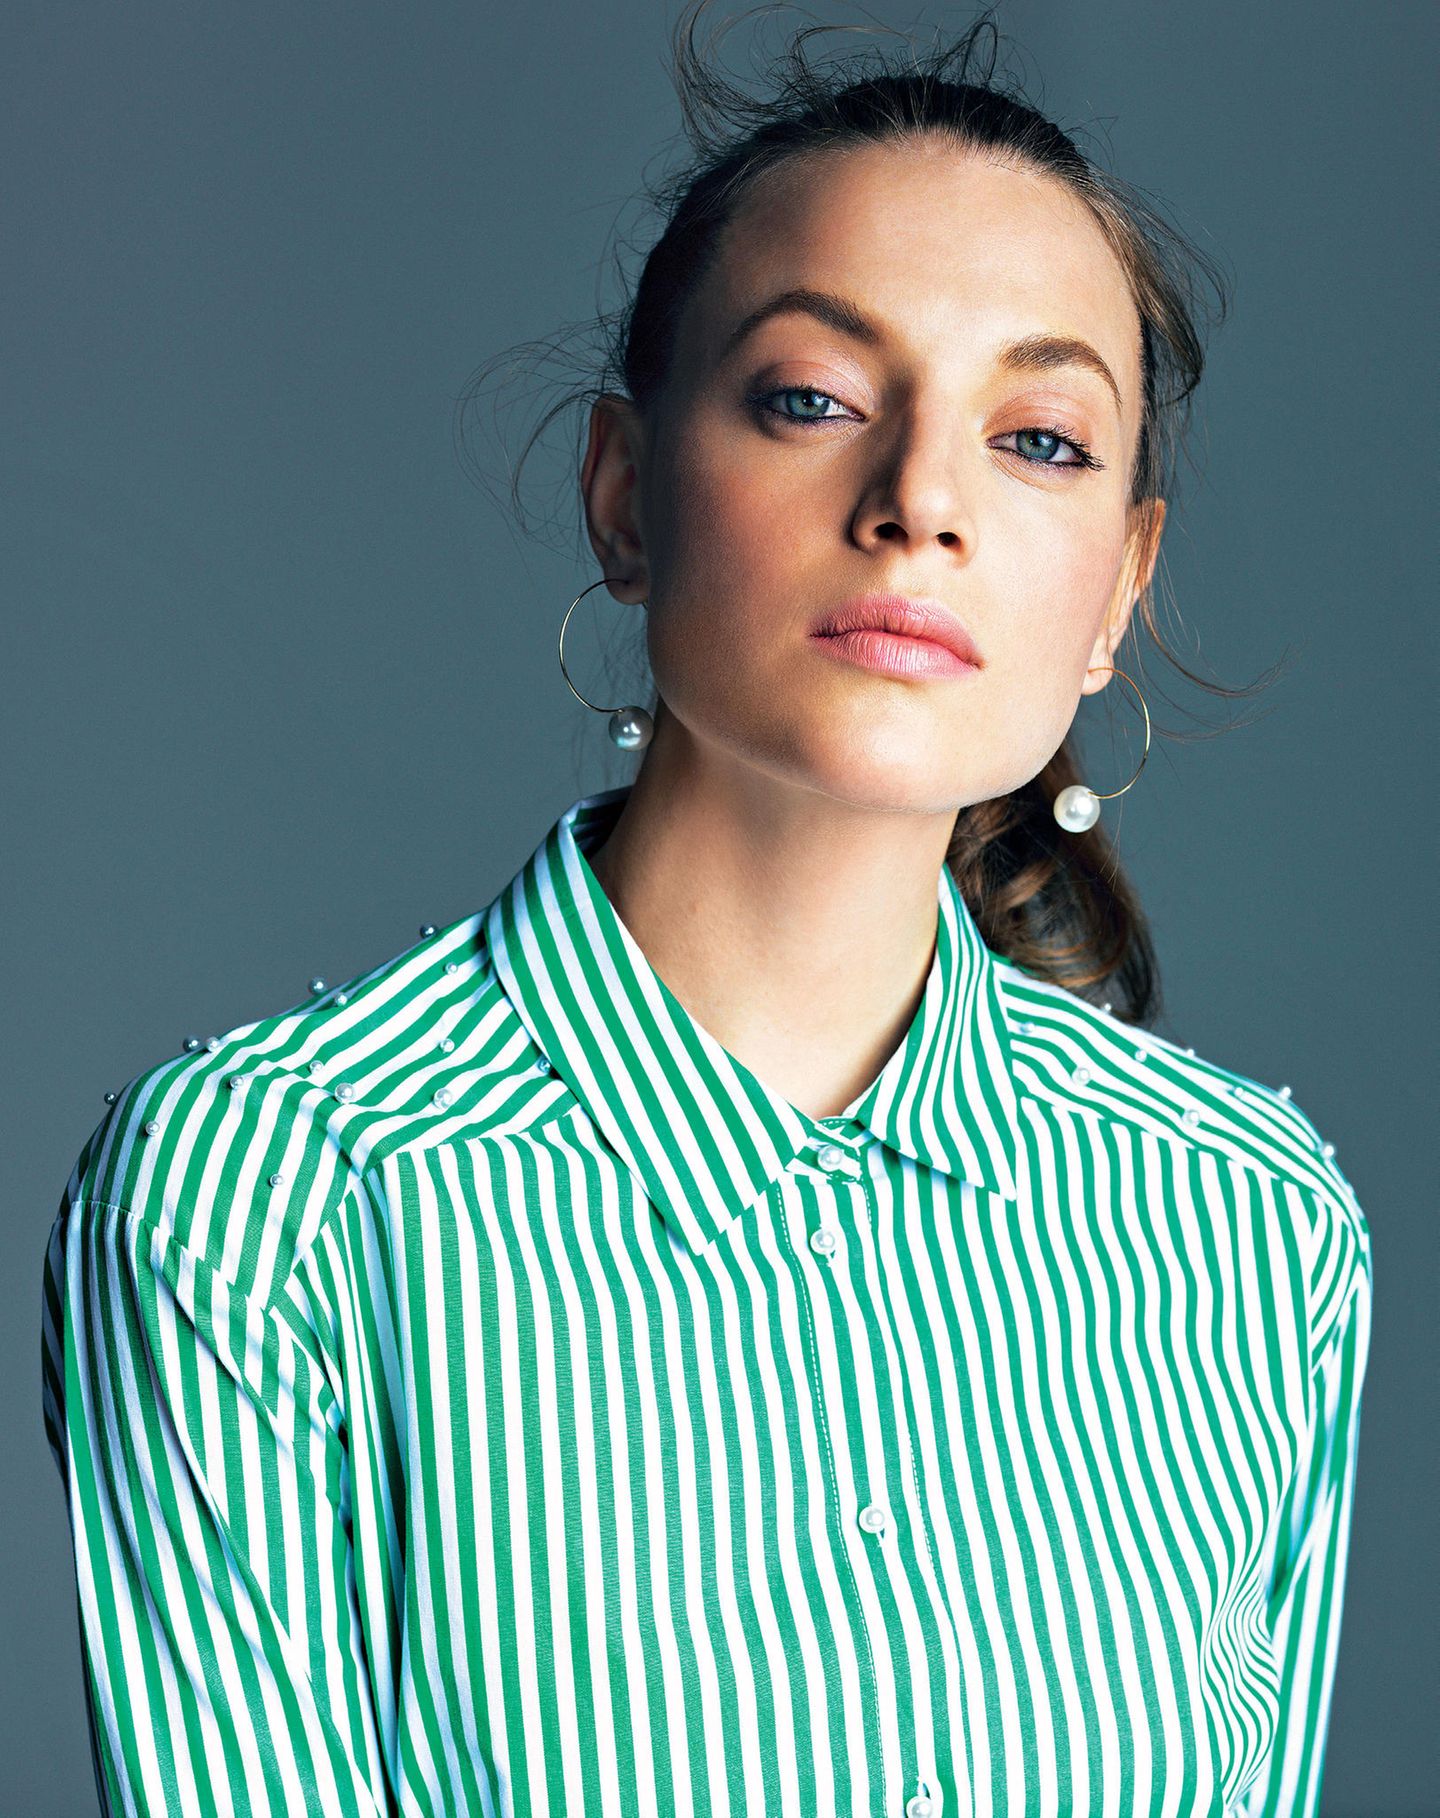 Sommertrends 2018: Model im Porträt mit gestreifter Bluse in grün und weiß.